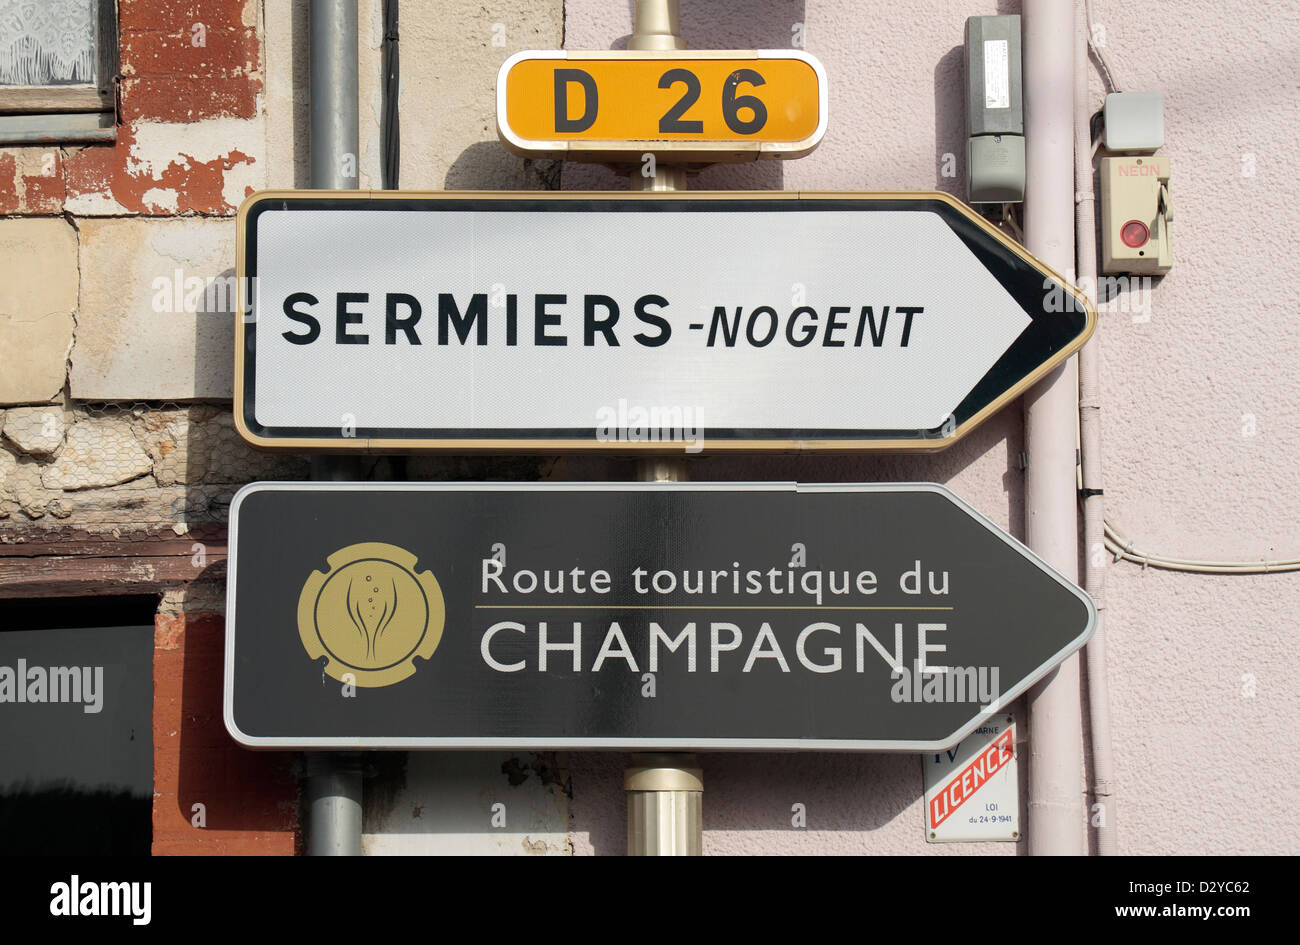 Panneau routier générique et la route touristique de Champagne, signe de Sermiers, Champagne-Ardenne, France. Banque D'Images